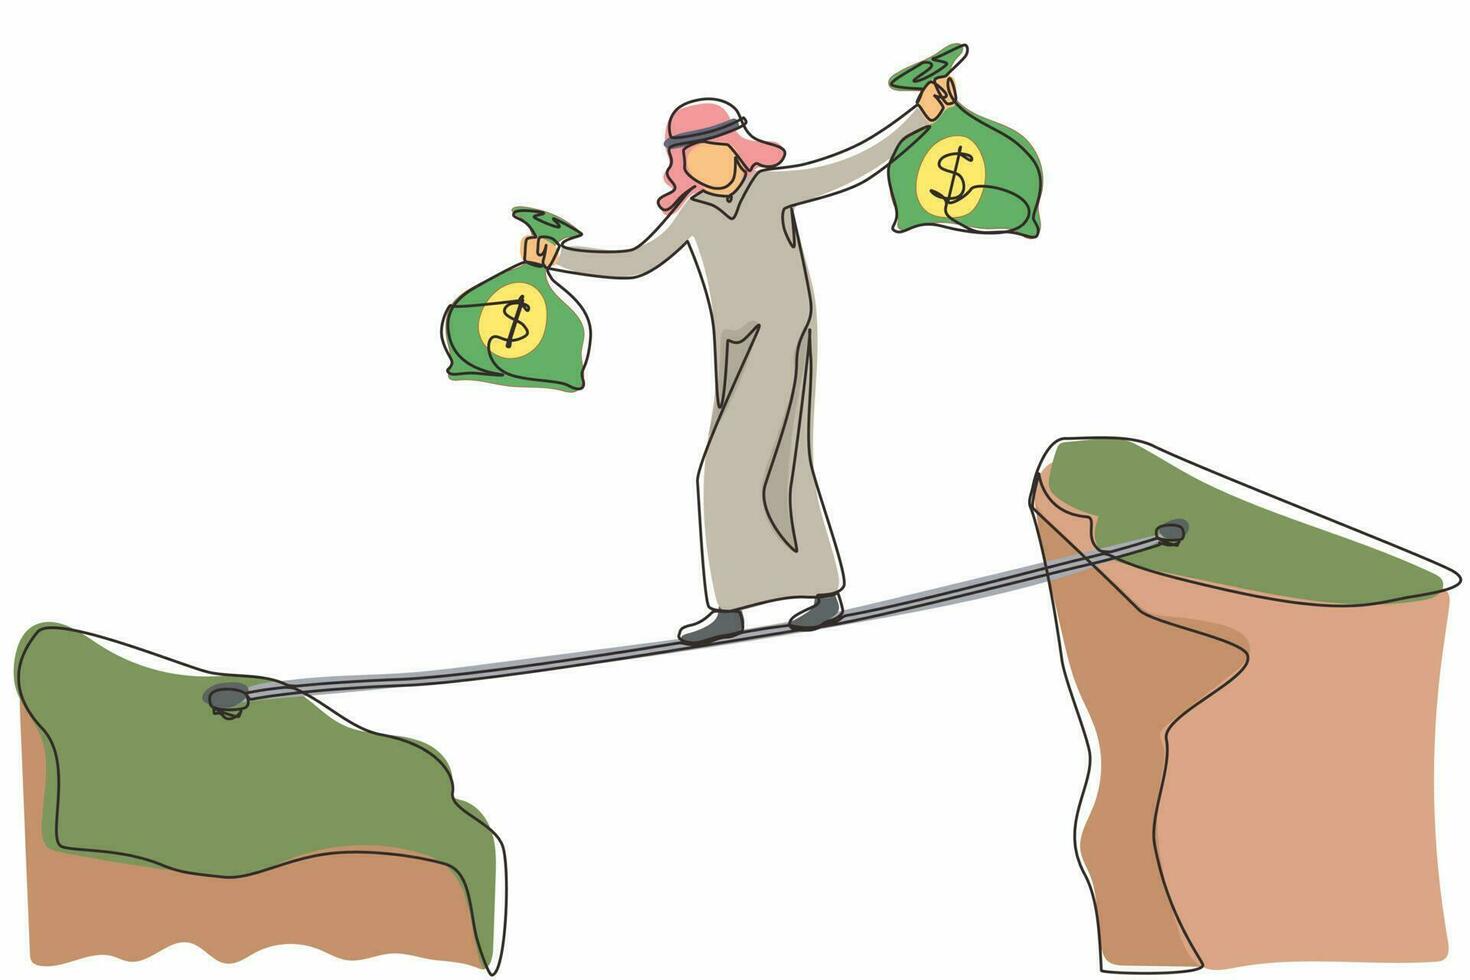 disegno continuo di una linea uomo d'affari arabo camminare sopra la montagna gap cliff trasportare due soldi borsa rischiando pericoloso. equilibrio a piedi maschile sul ponte di corda. illustrazione grafica vettoriale di progettazione a linea singola